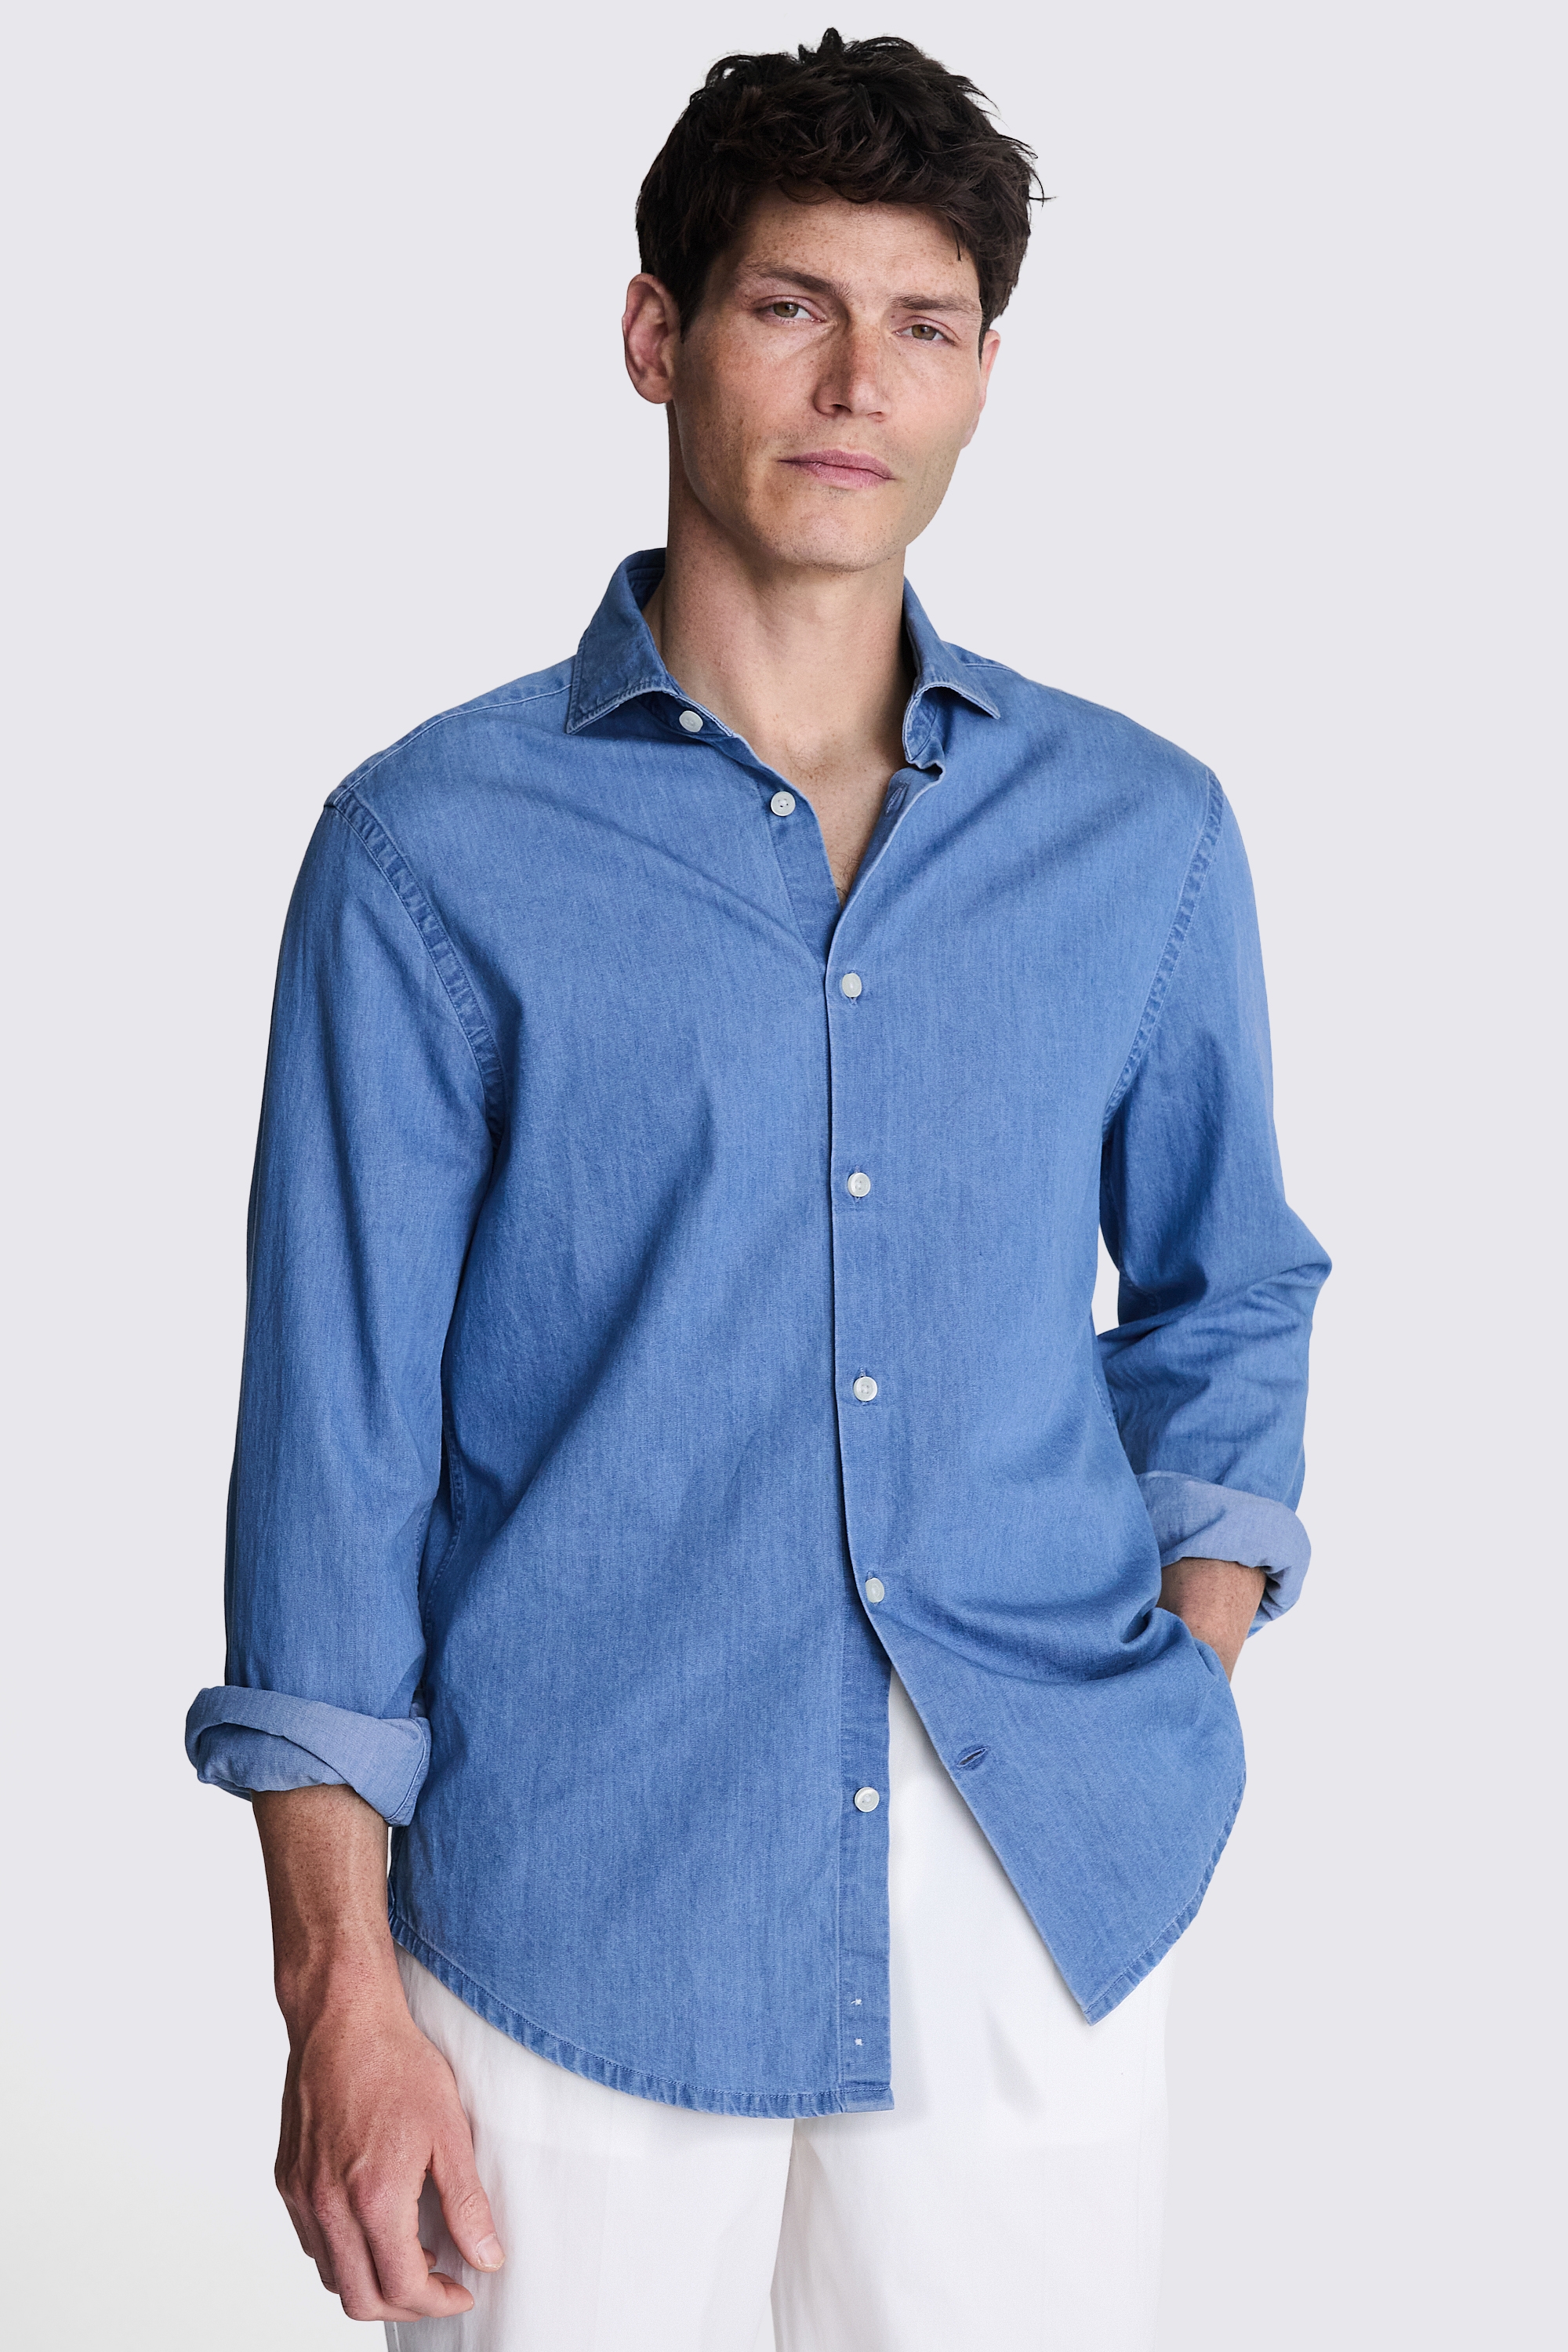 Blue Denim Shirt | Buy Online at Moss